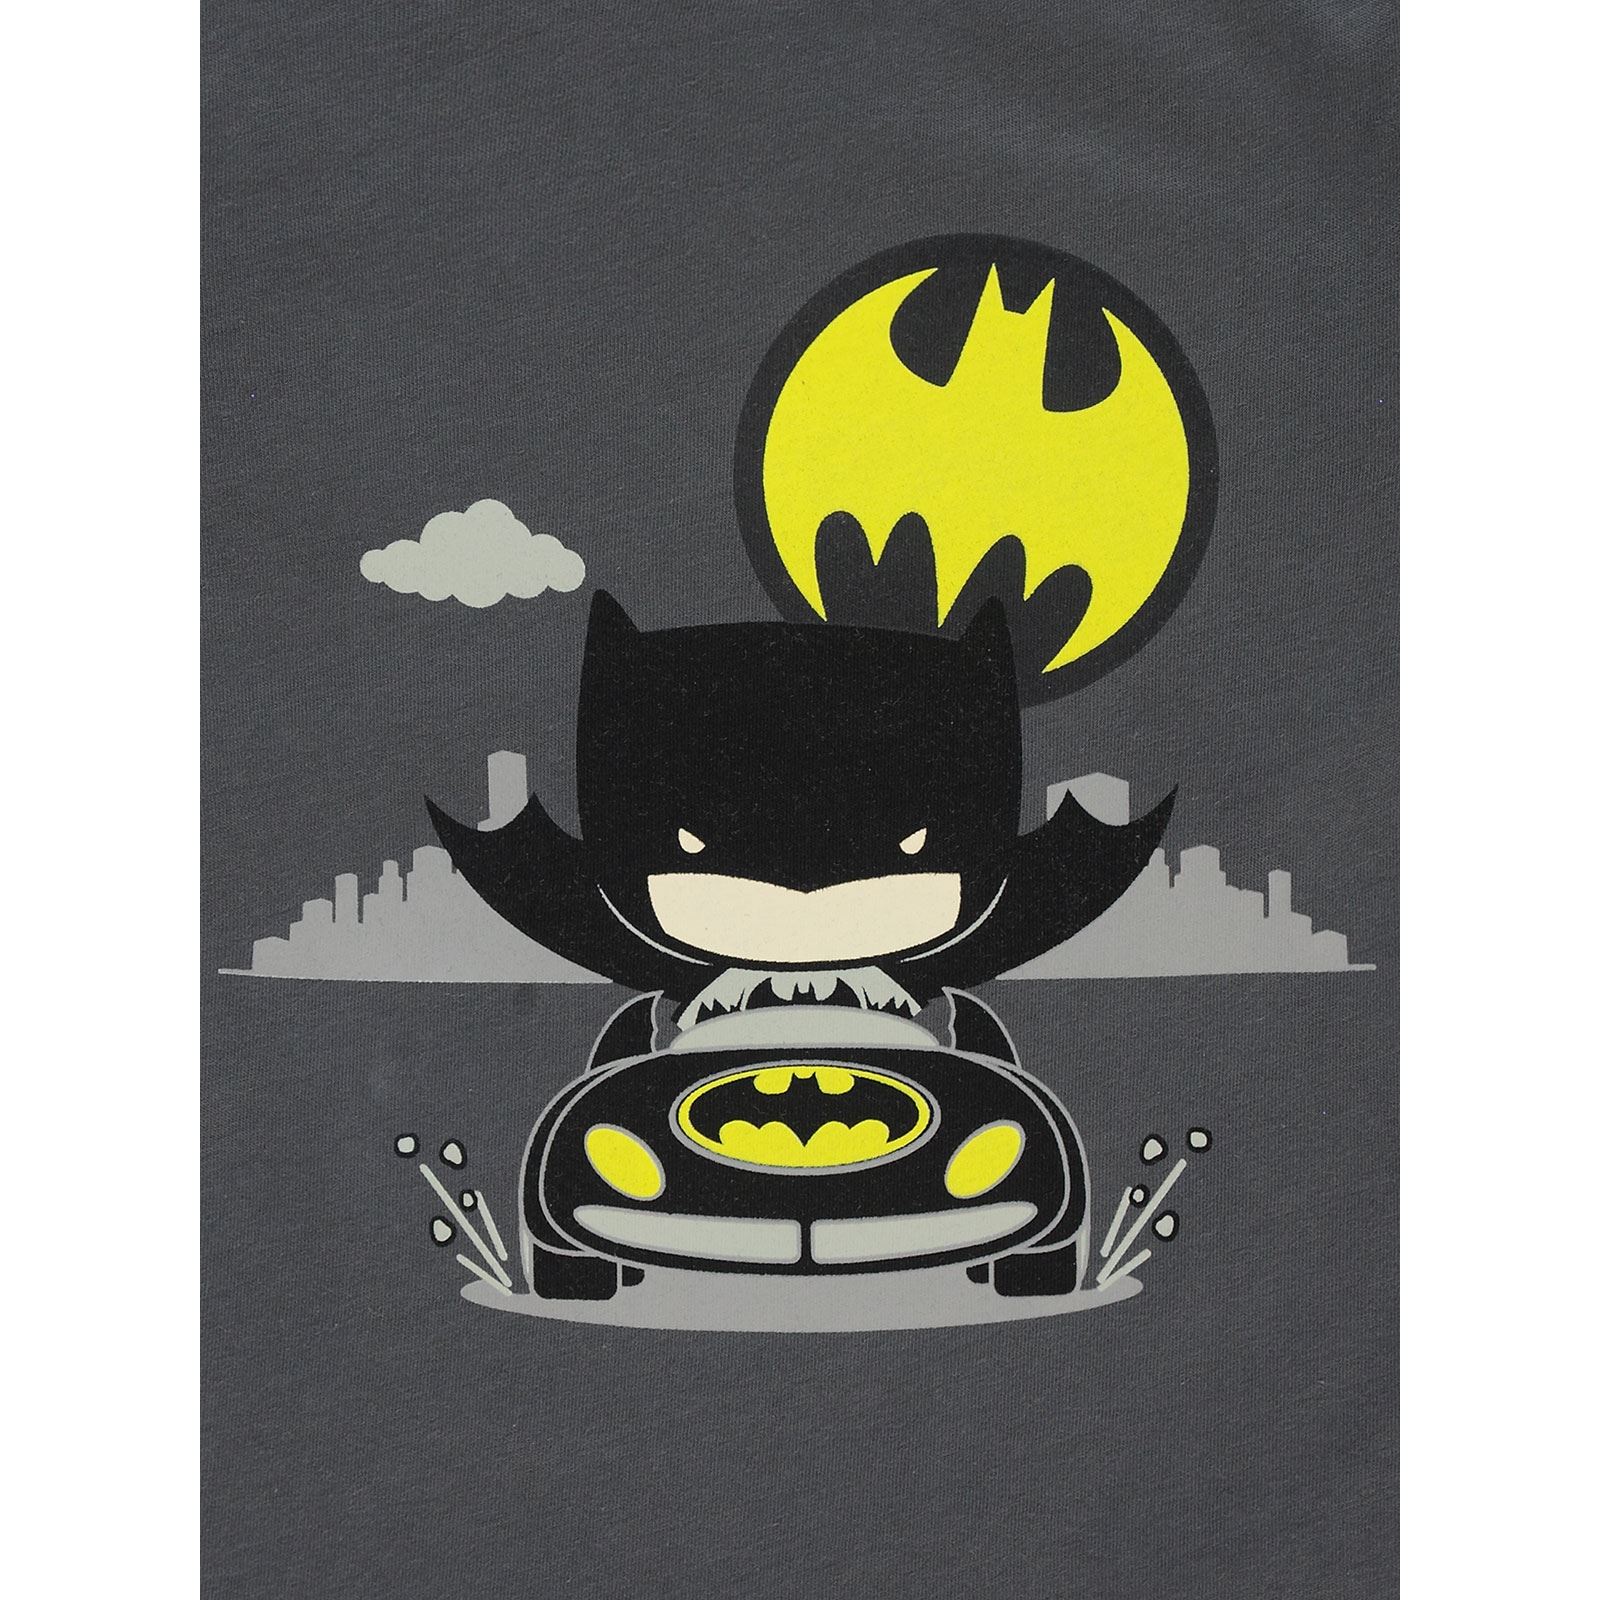 Batman Erkek Çocuk Sweatshirt 2-5 Yaş Füme